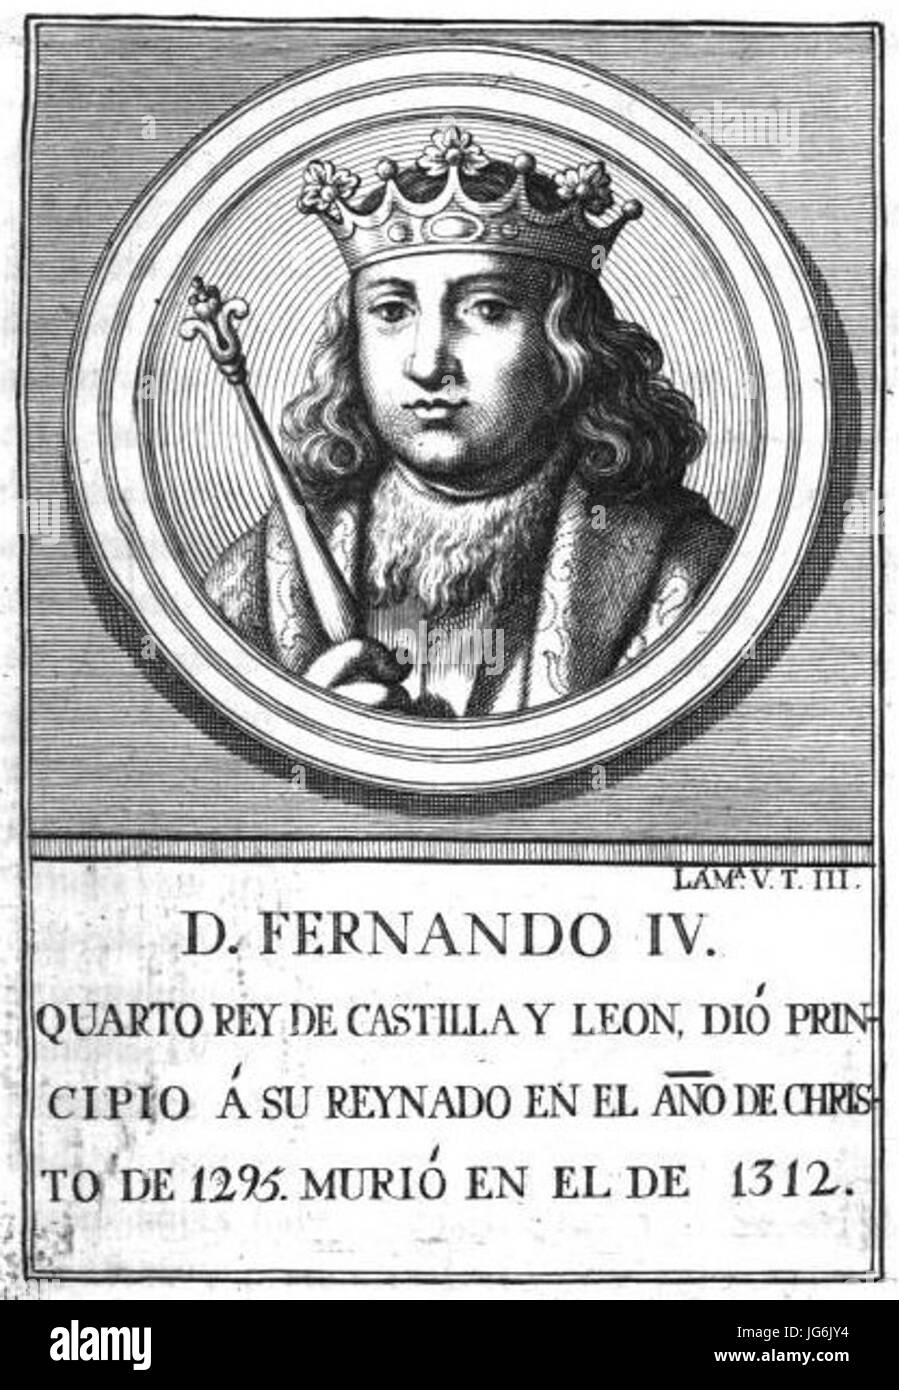 Retrato-103-Rey de Castilla-León-Fernando IV Stock Photo